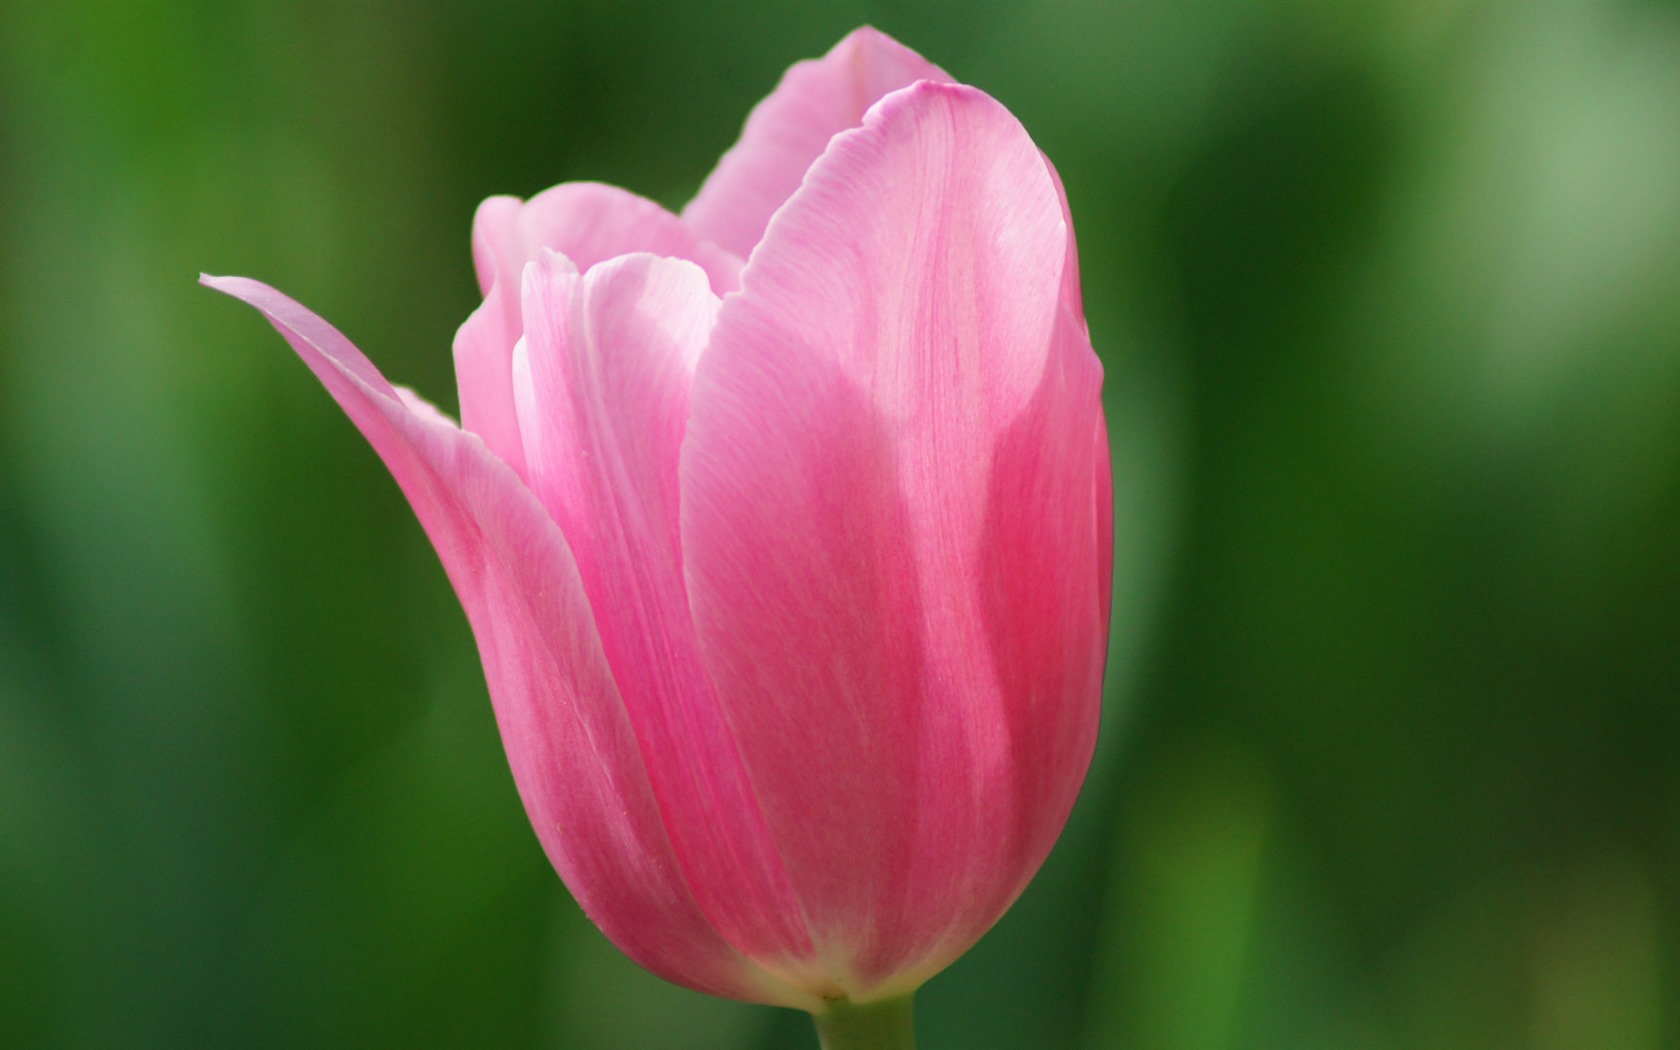 Fondos de pantalla HD de flores tulipanes frescos y coloridos #14 - 1680x1050